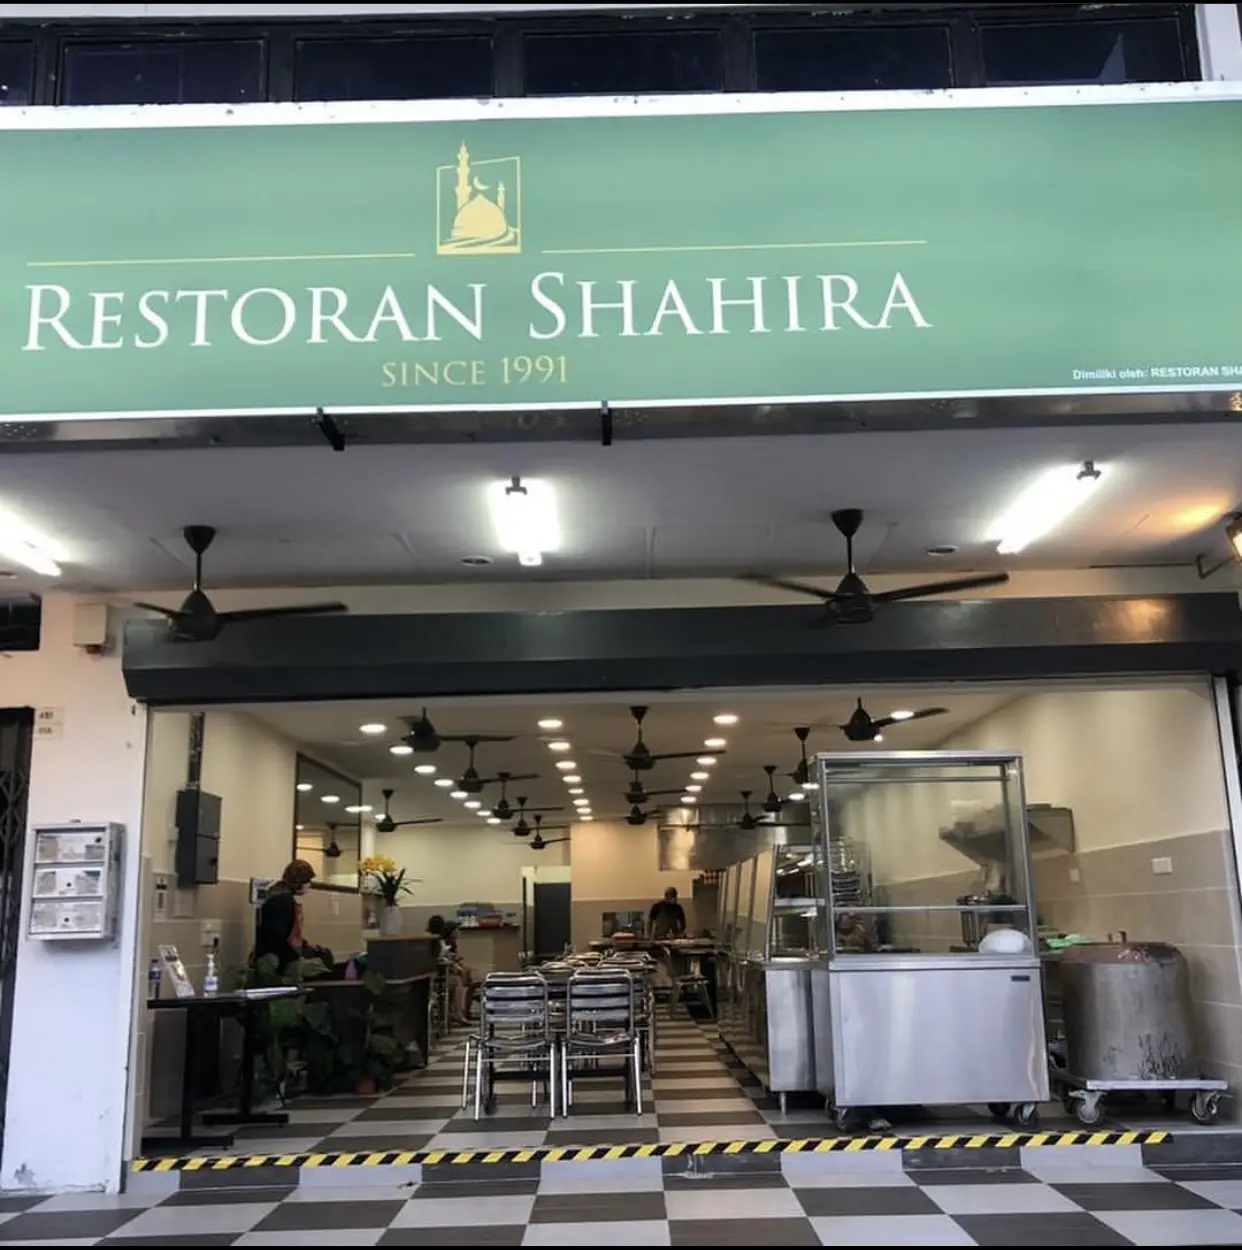 Restaurant Shahirah